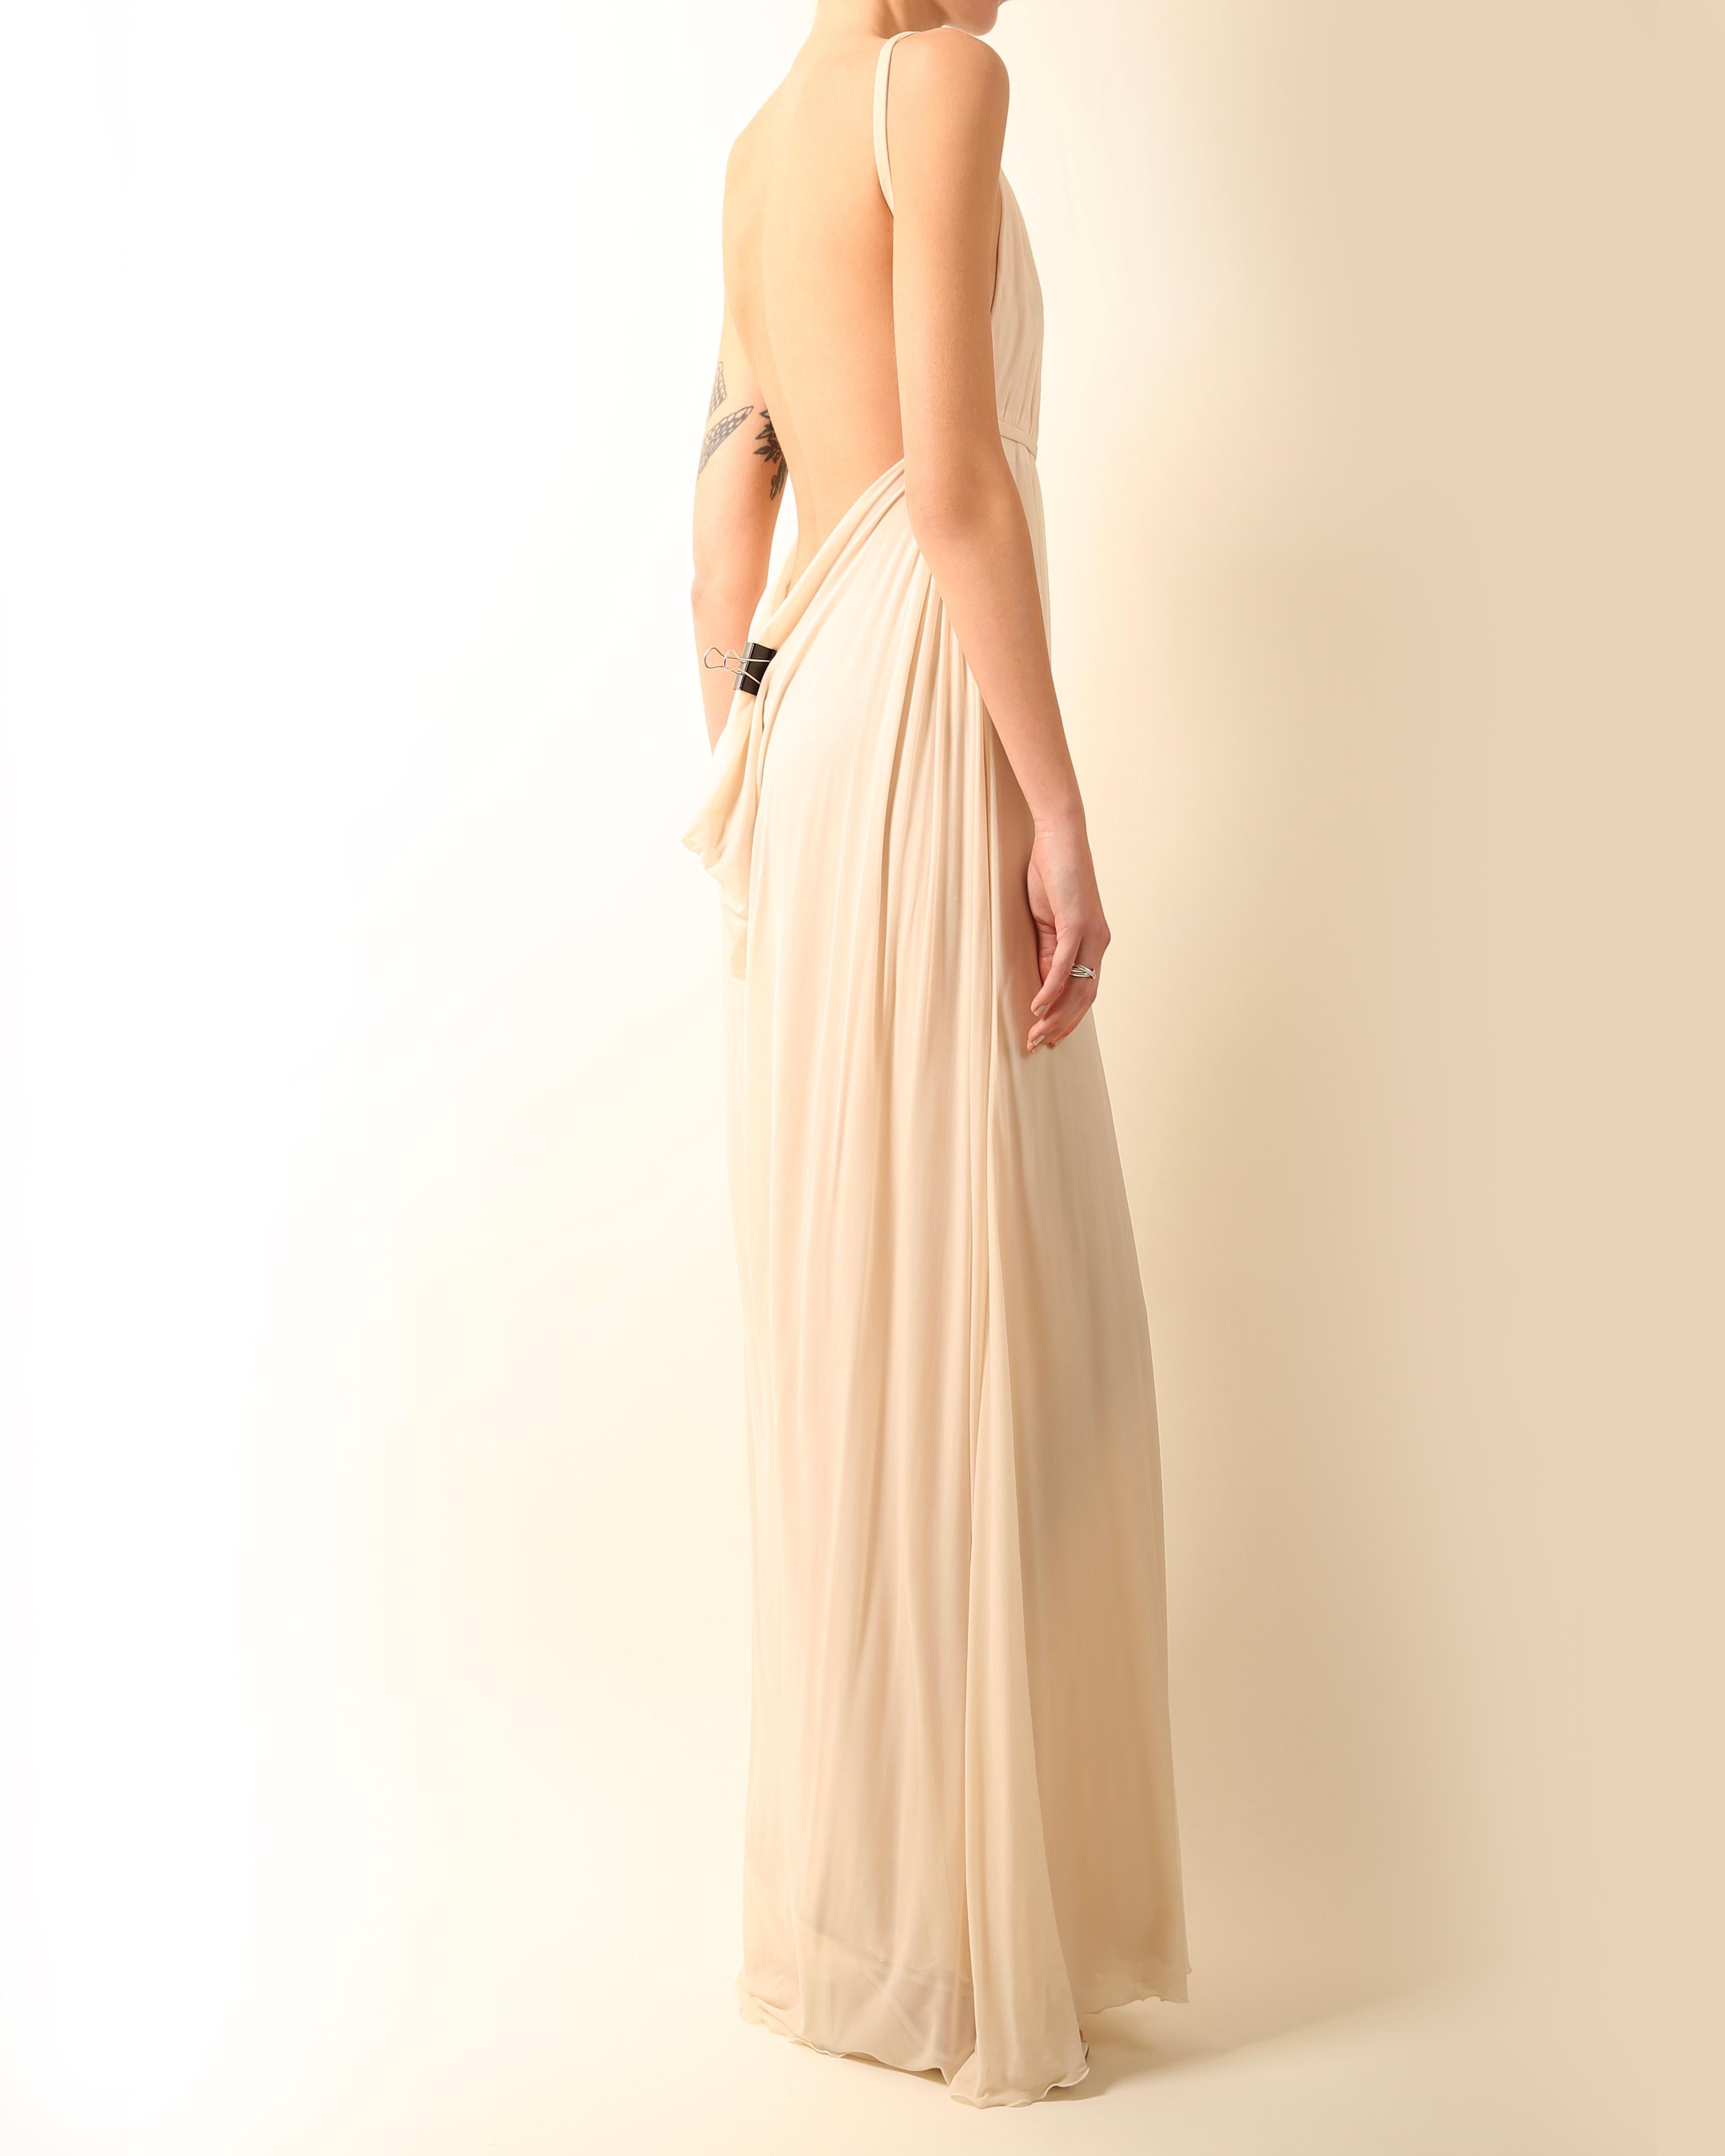 Robe de mariée longue dos nu Halston 09 plissée crème ivoire de style grec, taille 42 6